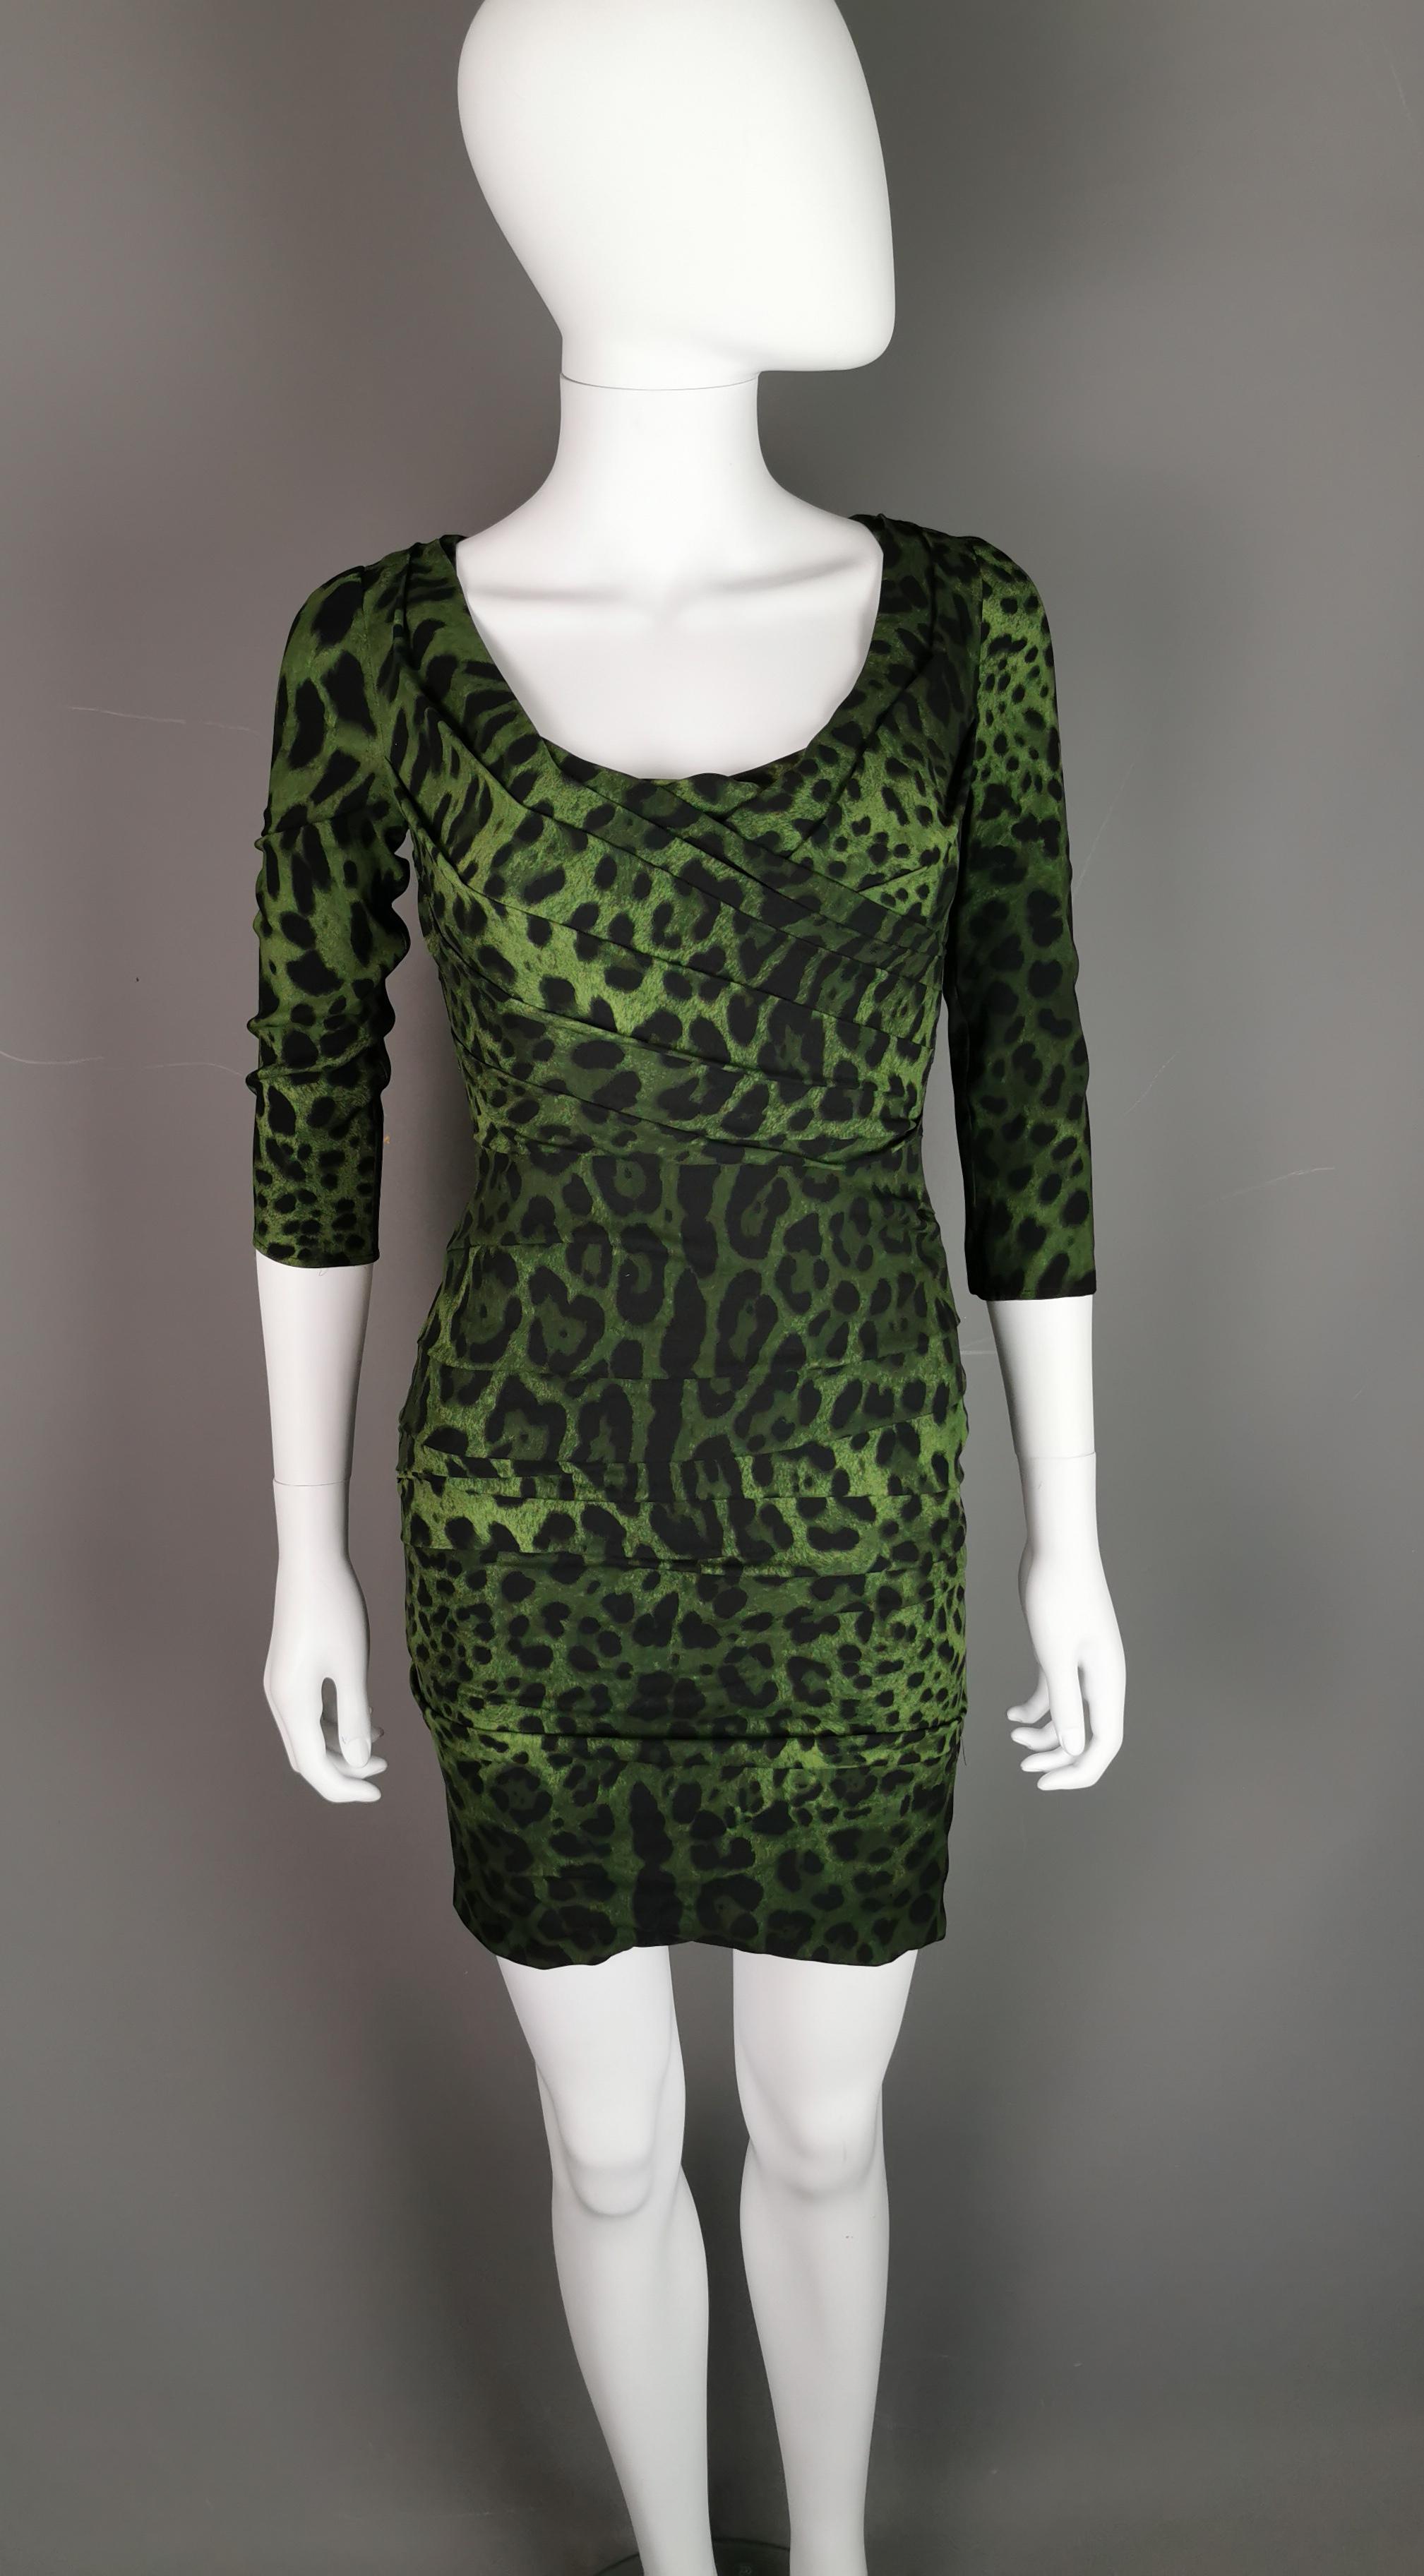 Une magnifique mini robe bodycon à imprimé léopard vert et noir de Dolce and Gabbana.

La robe a des épaules basses et inclinées et des détails ruchés, le décolleté est assez bas et arrondi accentué par le design ruchés.

Il présente une coupe